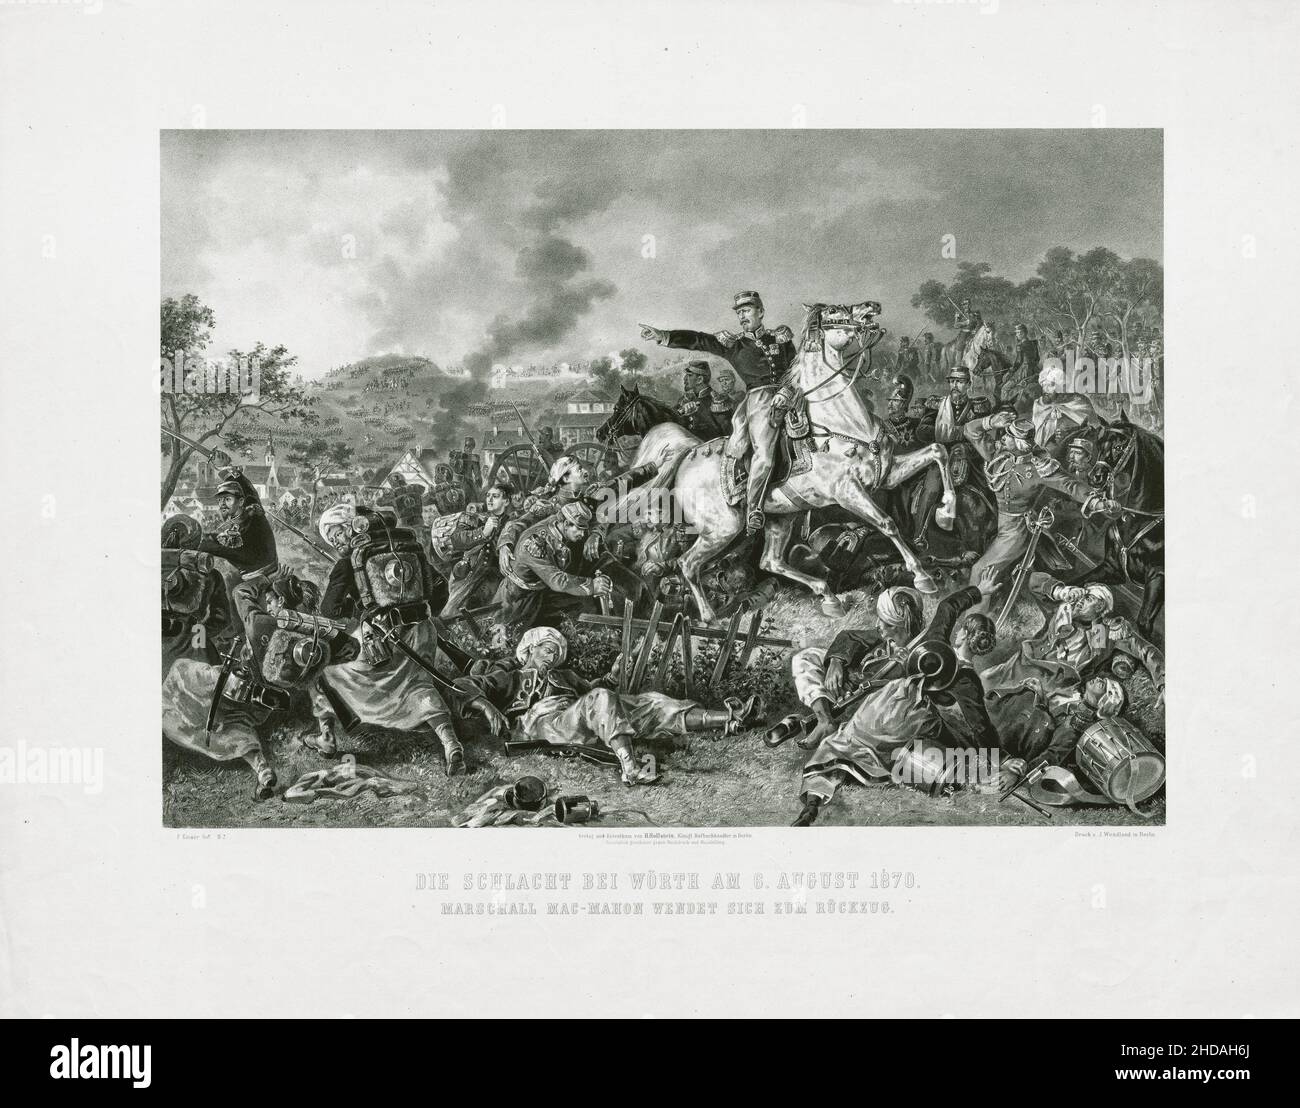 Litografia vintage della guerra franco-prussiana: La battaglia di Wörth il 6 agosto 1870, il maresciallo Mac-Mahon si ritorsa. 1872 Foto Stock